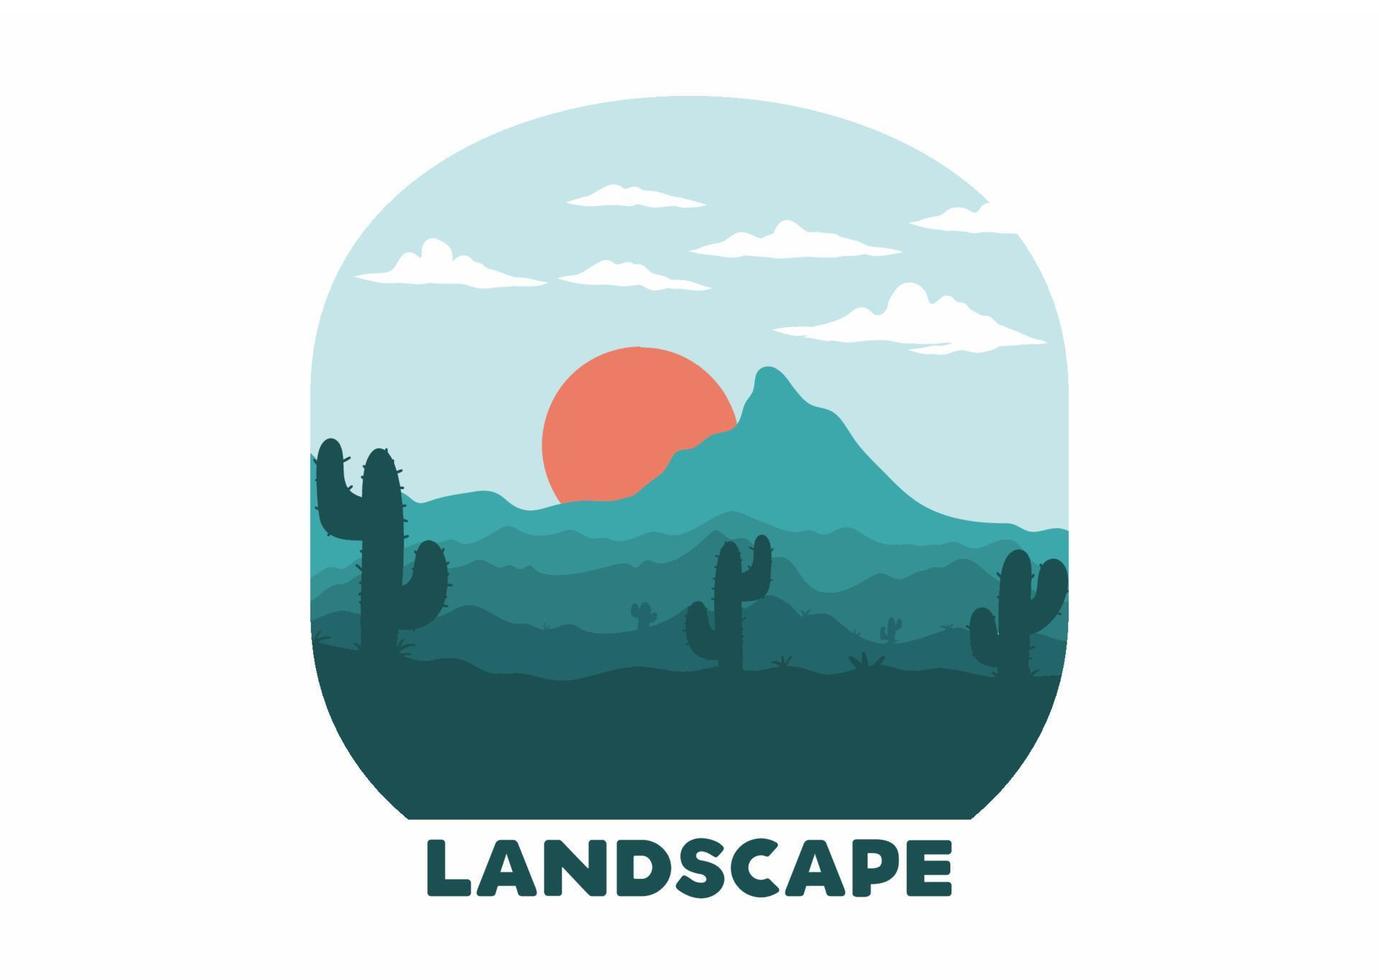 paysage désertique coloré avec illustration de cactus vecteur